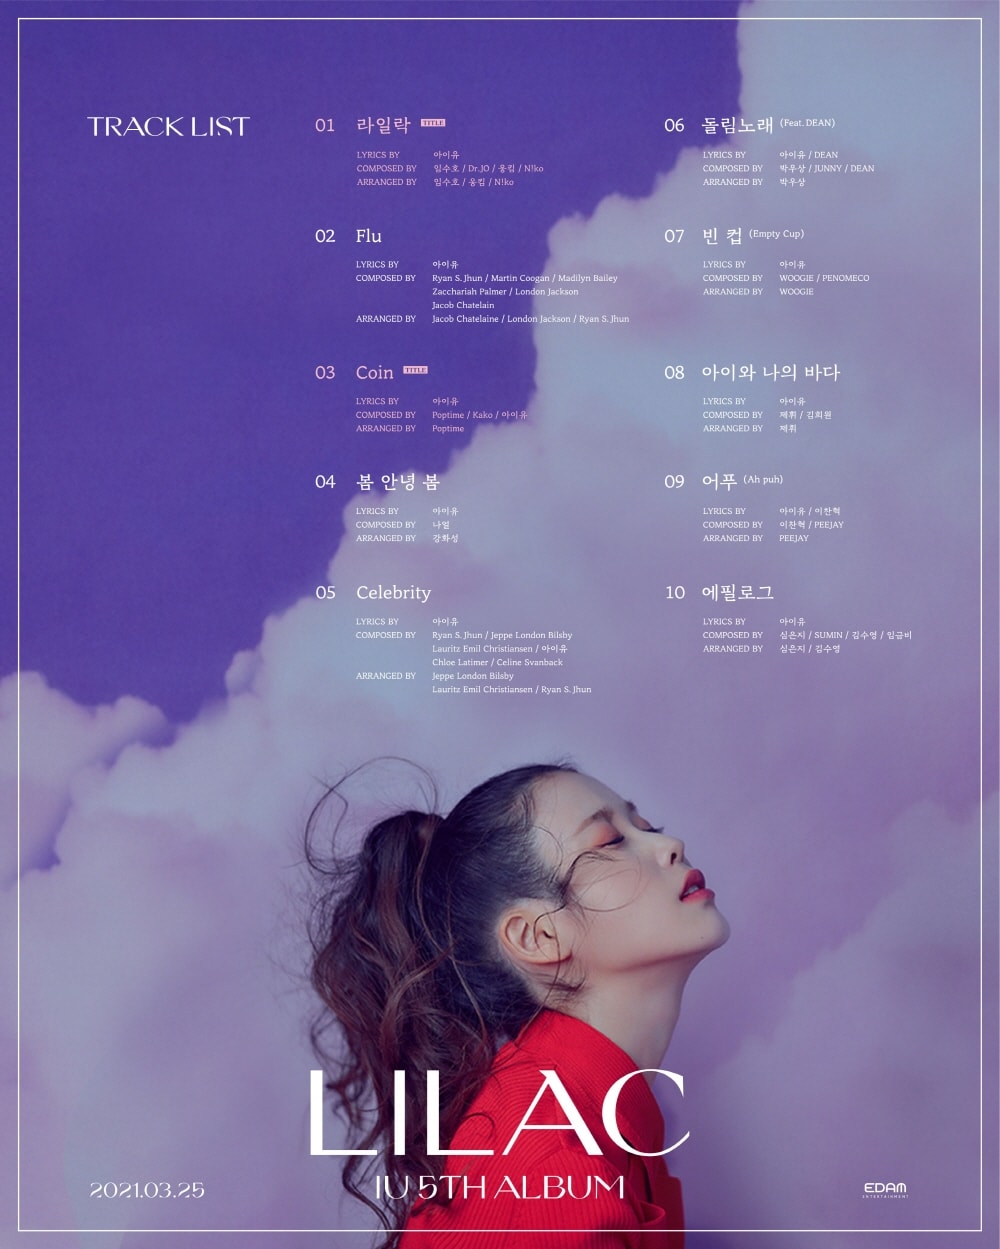 아이유 새 앨범 ‘LILAC’ 트랙리스트 공개, 신보, 5집, 딘, 피제이, 수민, 우기, 페노메코, 나얼 등 참여